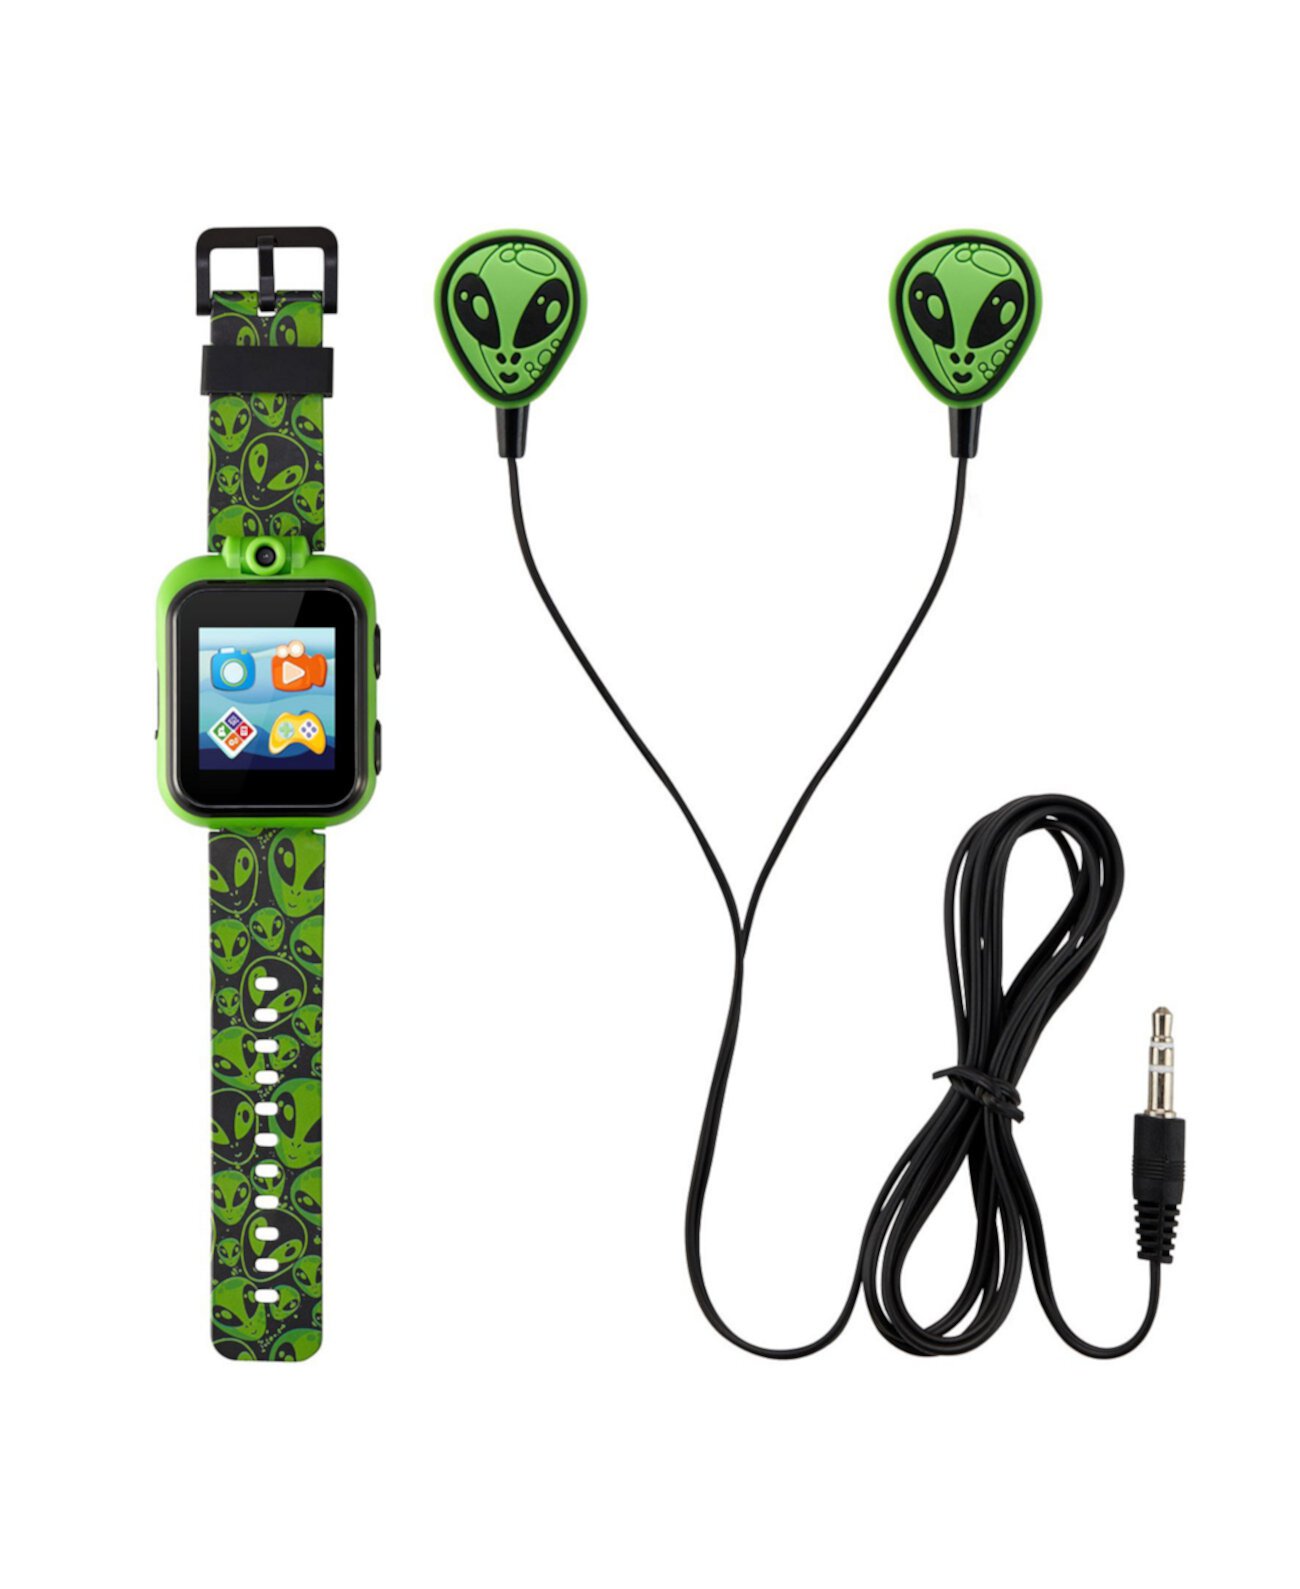 Детские смарт-часы Ailen с силиконовым ремешком черного и зеленого цветов, сенсорным экраном, 42 мм, подарочный набор с наушниками Playzoom